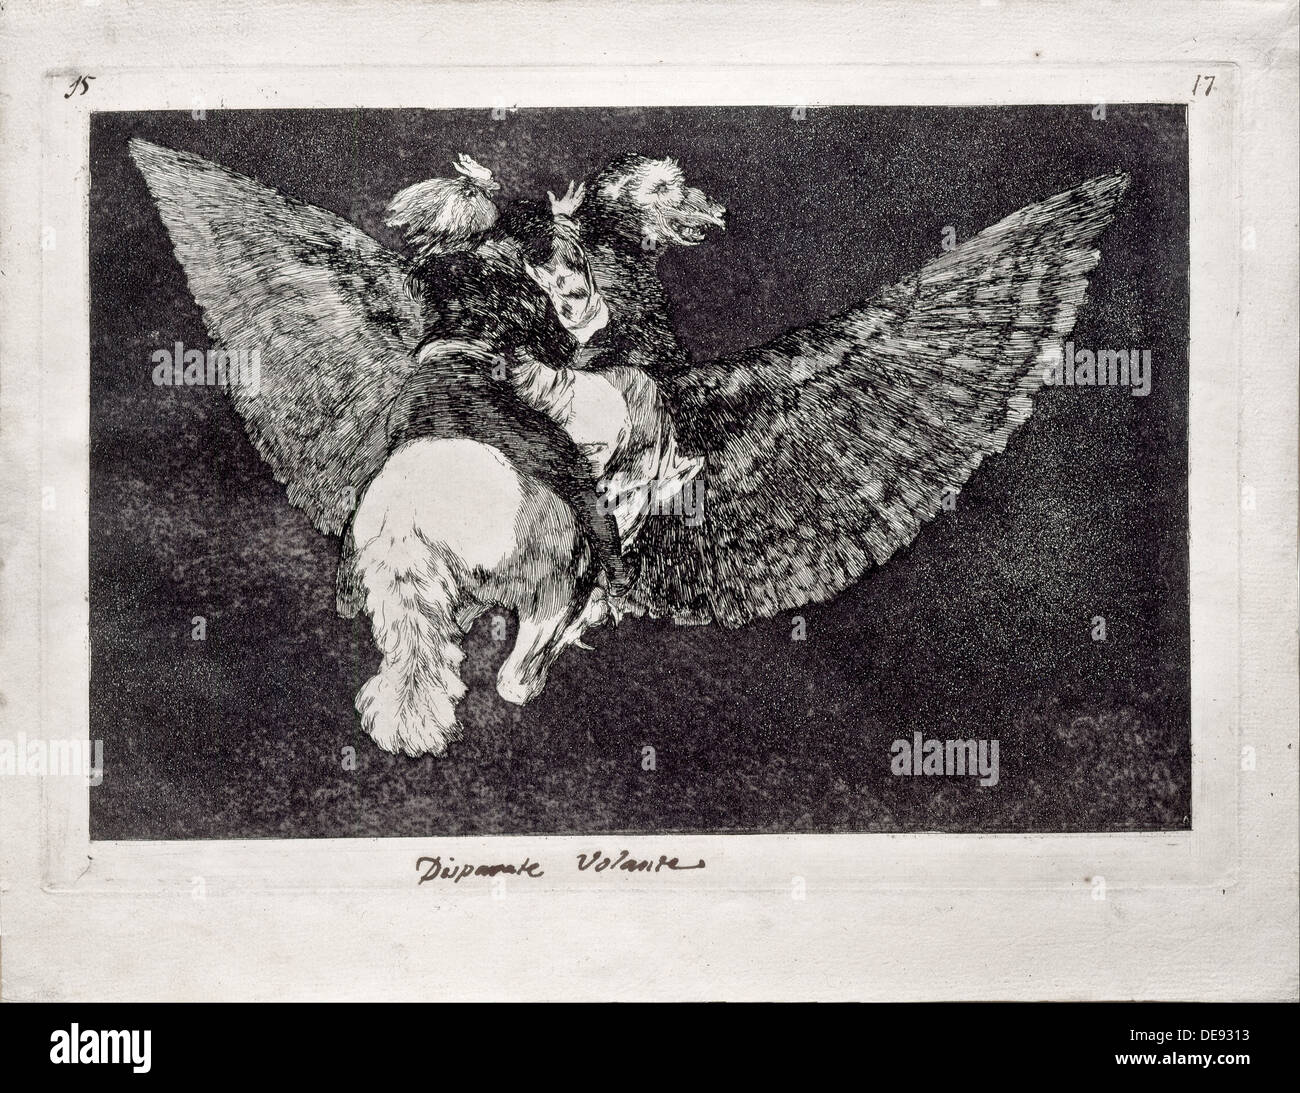 La folie de vol (de la série Los disparates (Follies), 1815-1819. Artiste : Goya, Francisco de (1746-1828) Banque D'Images